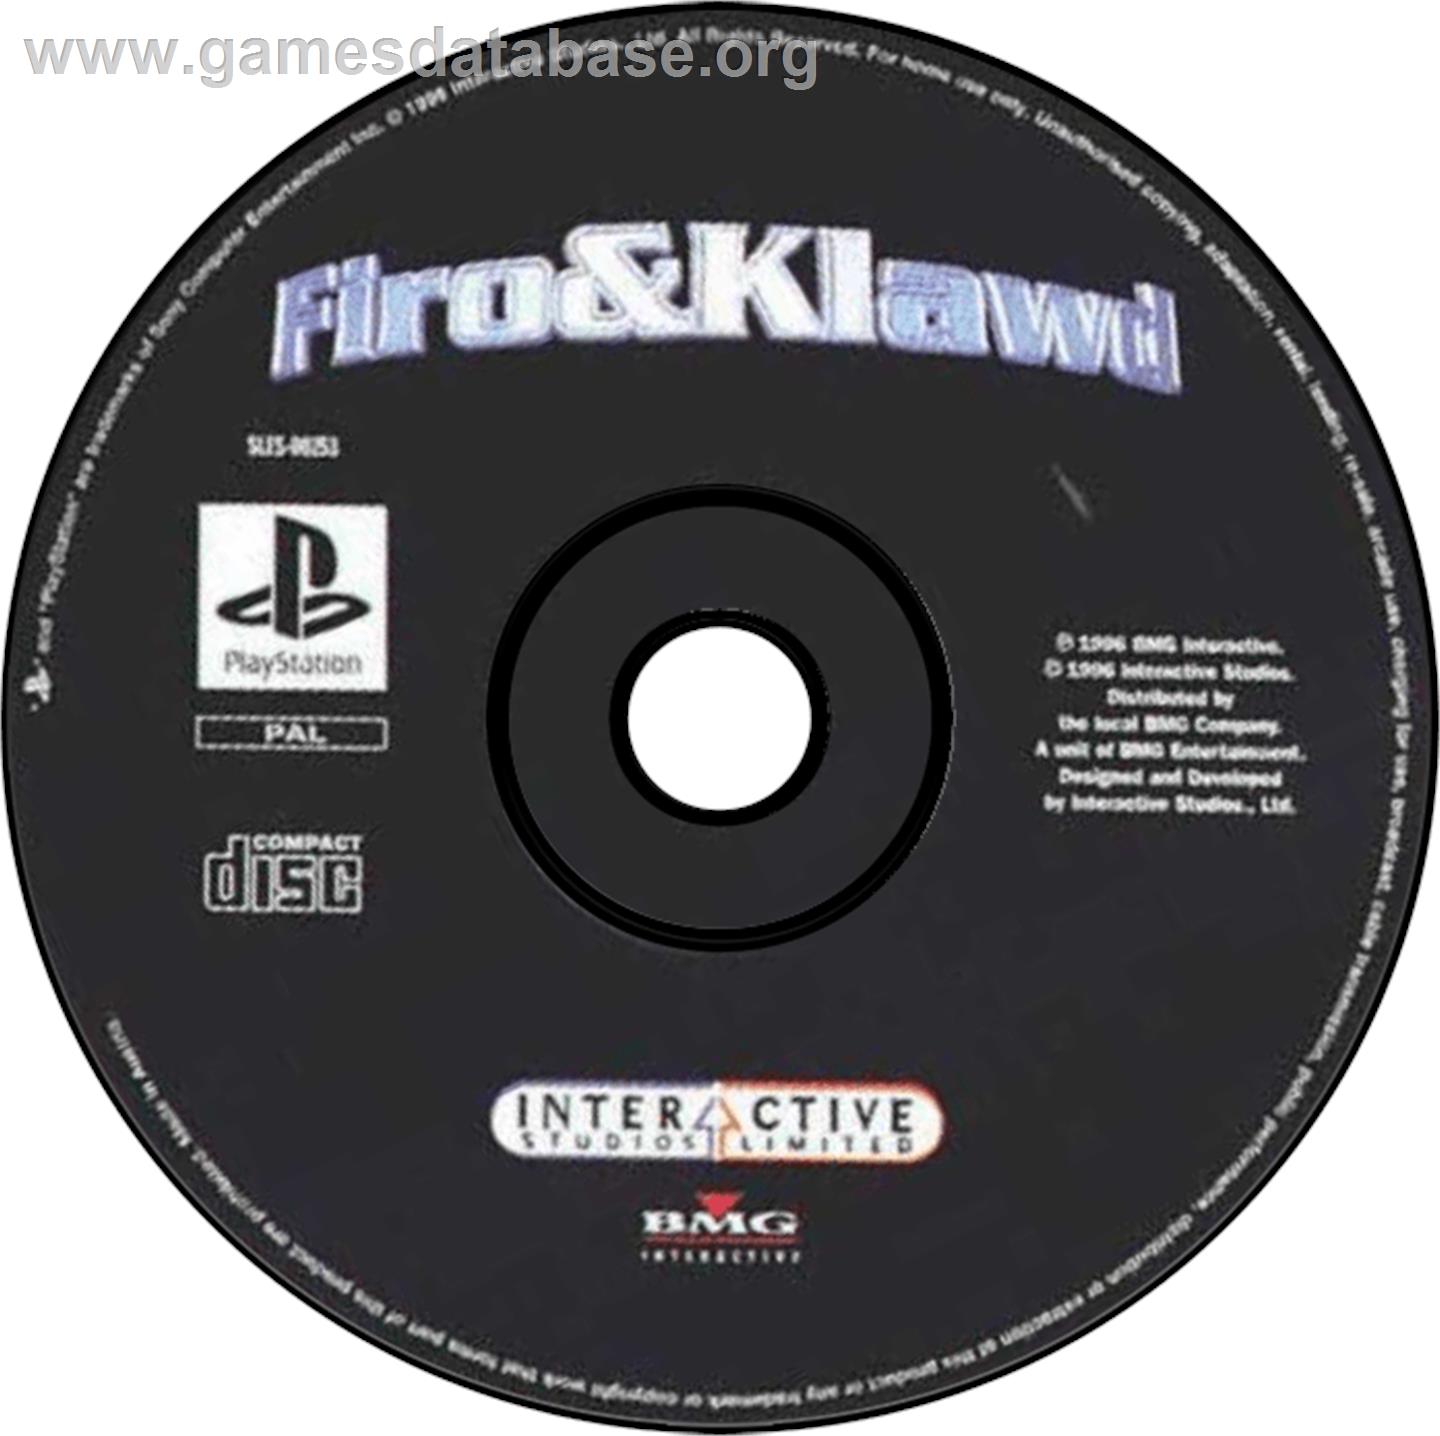 Firo & Klawd - Sony Playstation - Artwork - Disc